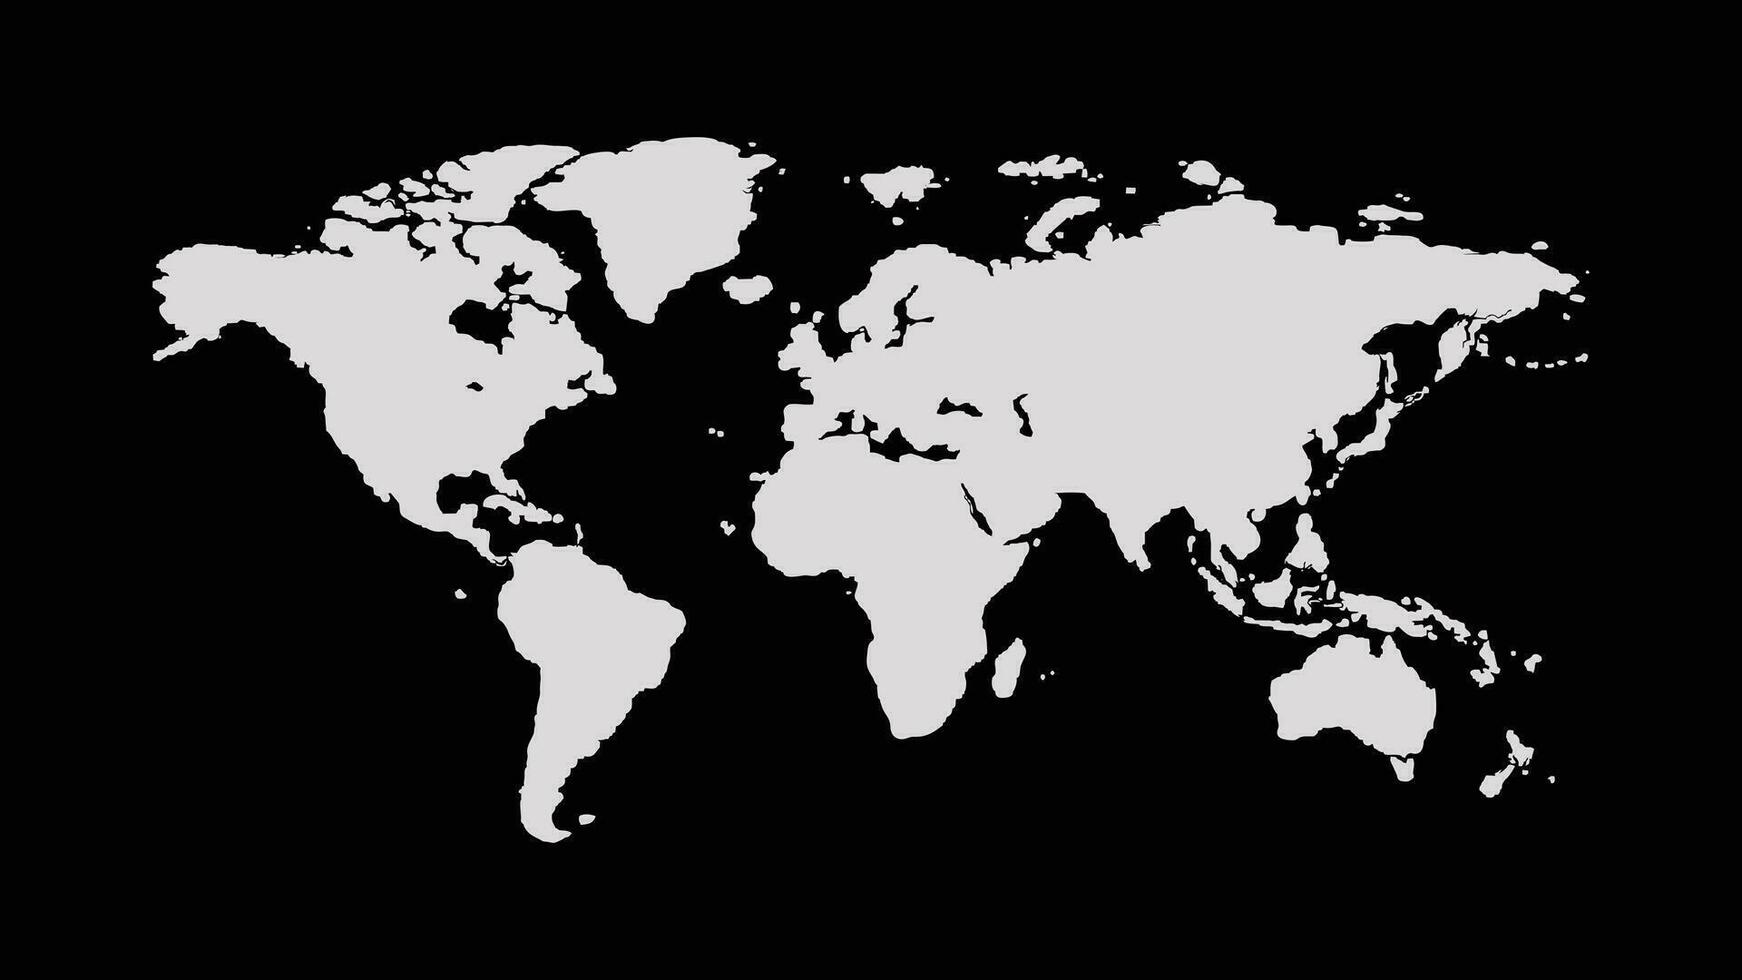 Welt Karten. Welt Karte Symbol Vektor isoliert auf schwarz Hintergrund. eben Erde Karte Vektor Design. Welt Karte Vektor Illustrationen, Globus Welt Karte Symbol. Welt Karten einfach unterzeichnen. Karte Silhouette